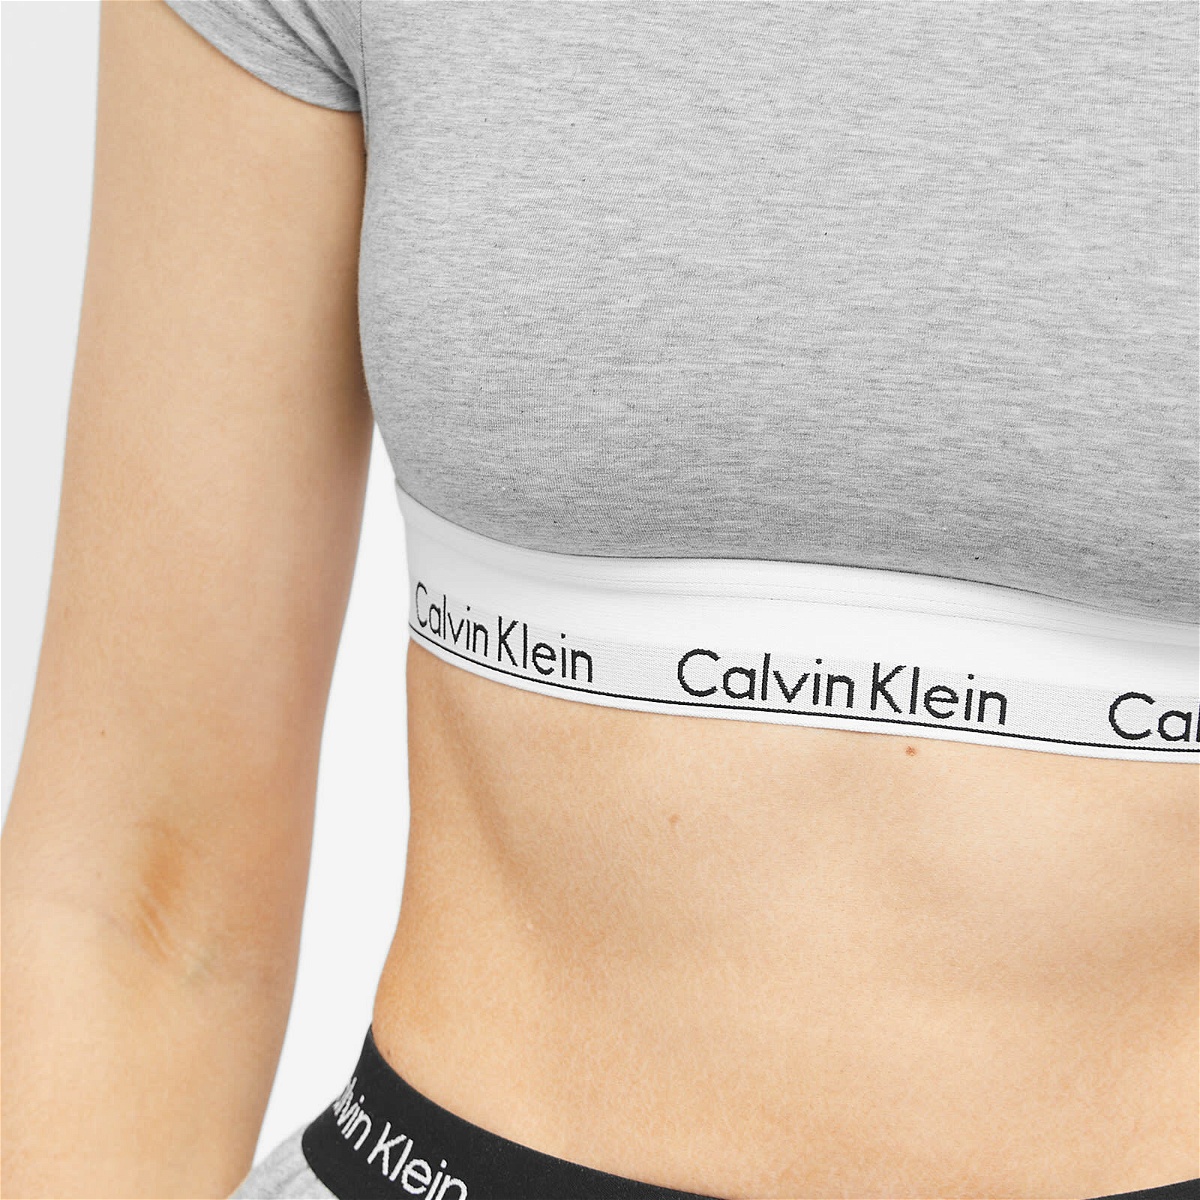 Calvin Klein Women's Bralette T-Shirt in Grey Heather Calvin Klein